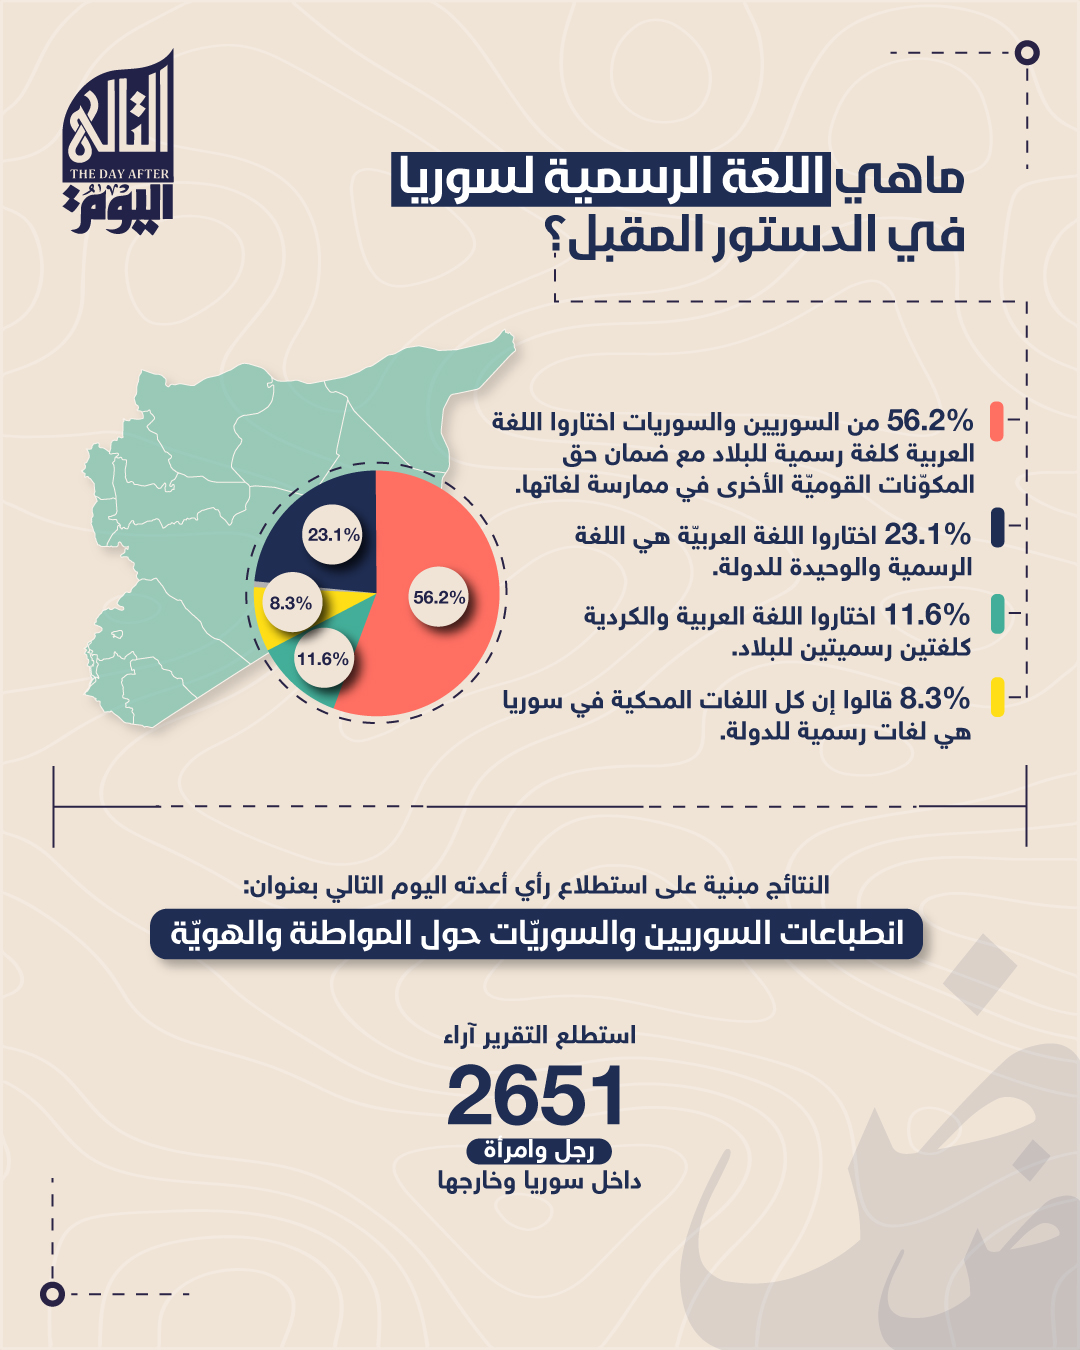 ما هي اللغة الرسمية لسوريا في الدستور المقبل؟